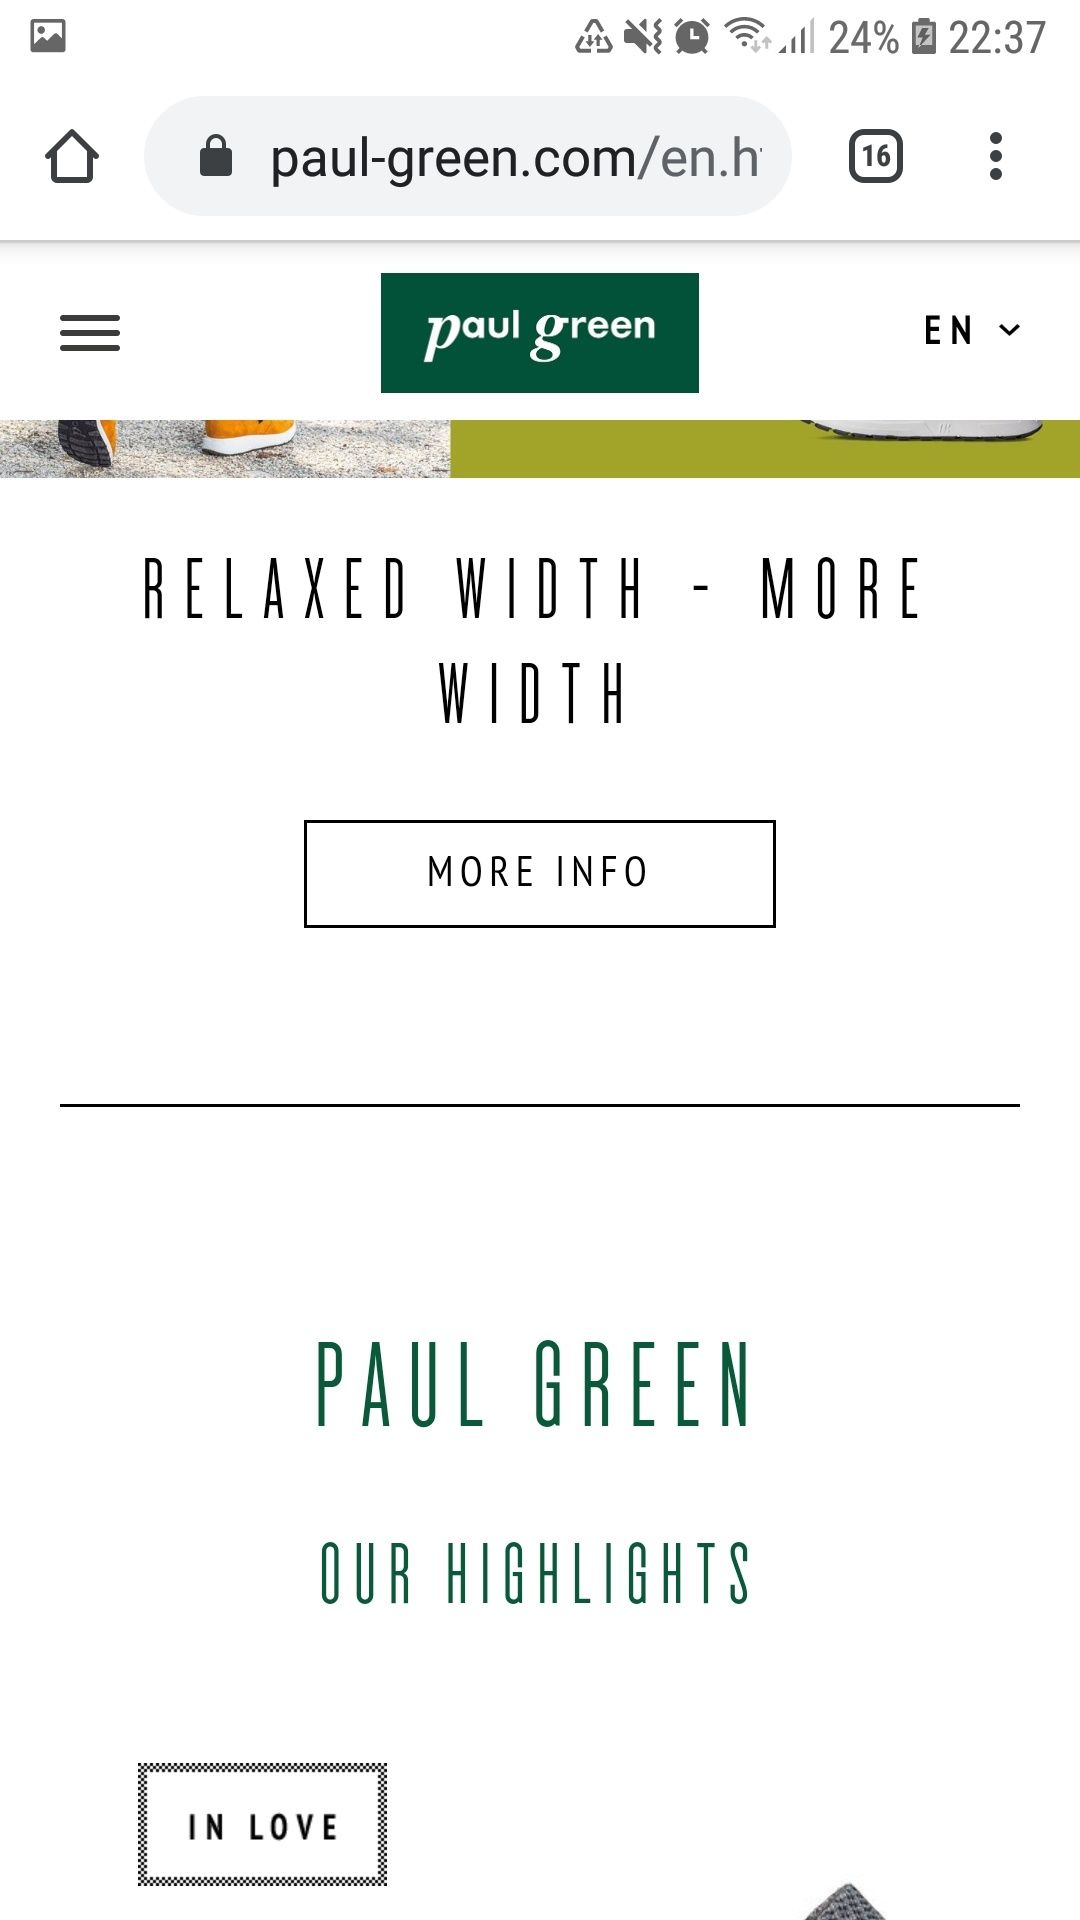 "Paul green "